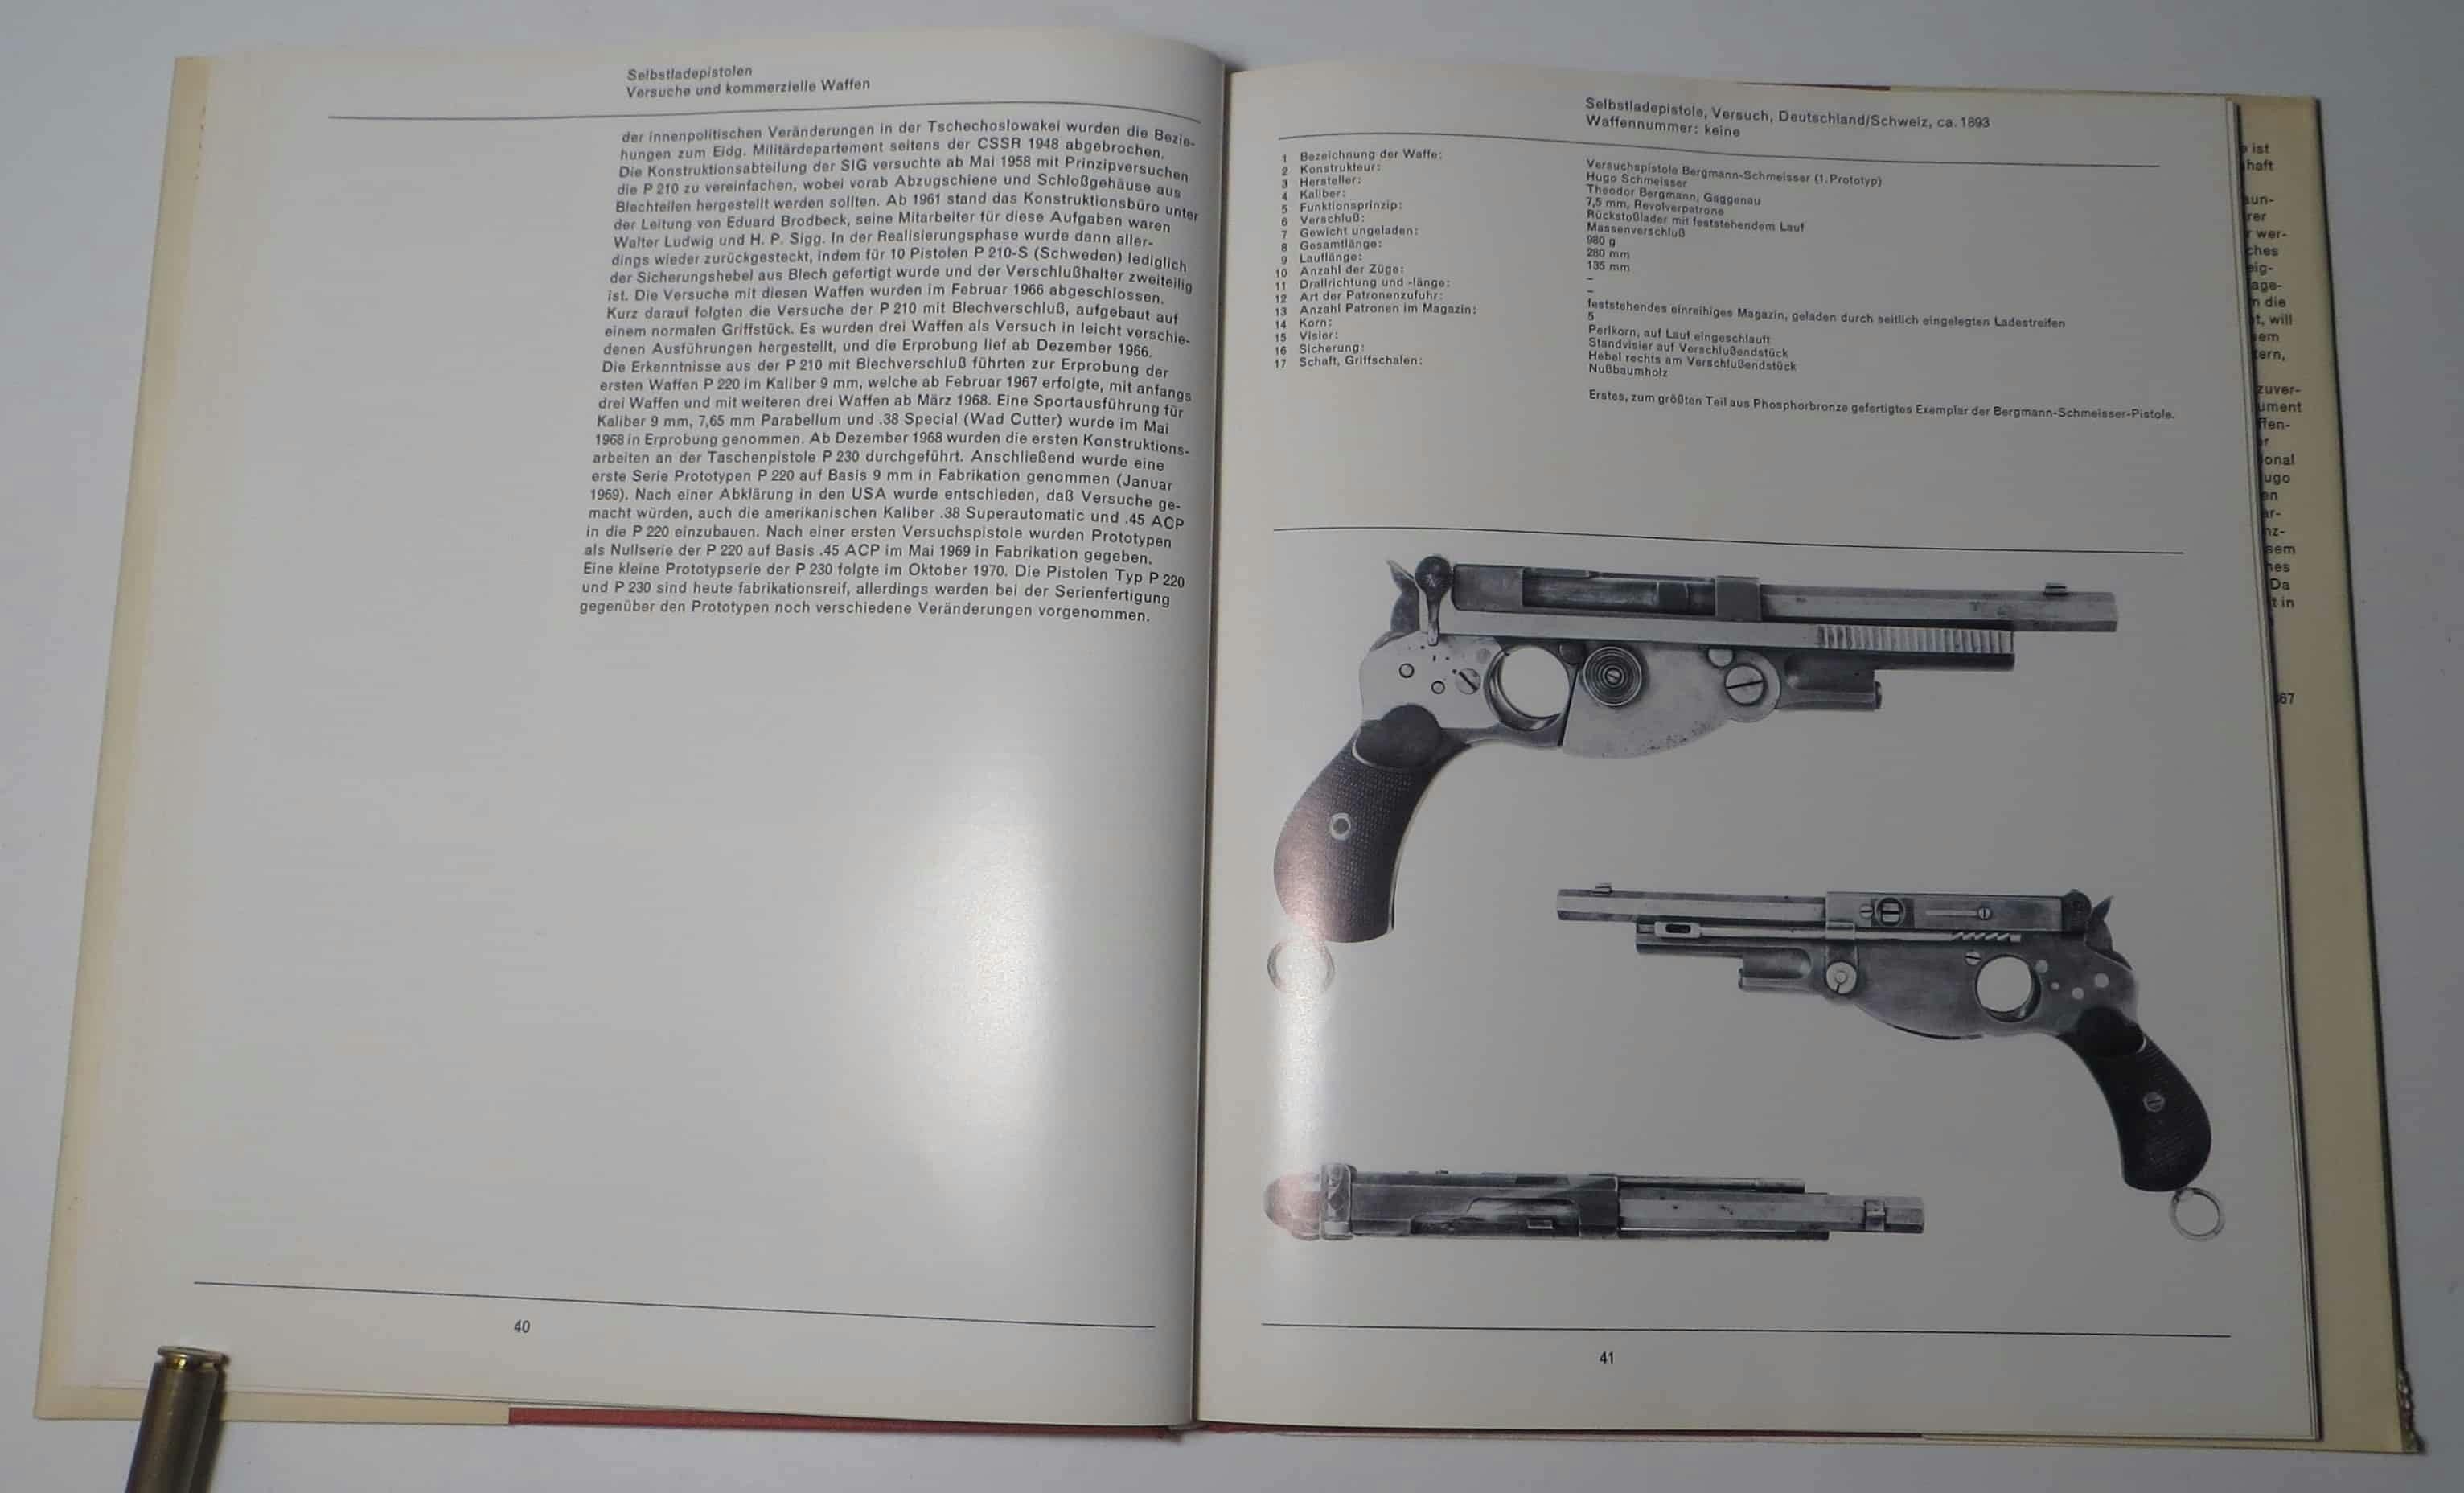 Die Bergmann-Pistolen gelten als früheste Selbstladepistolenversuche. Eine Zusammenarbeit von Schmeisser Deutschland mit Bergmann in der Schweiz.